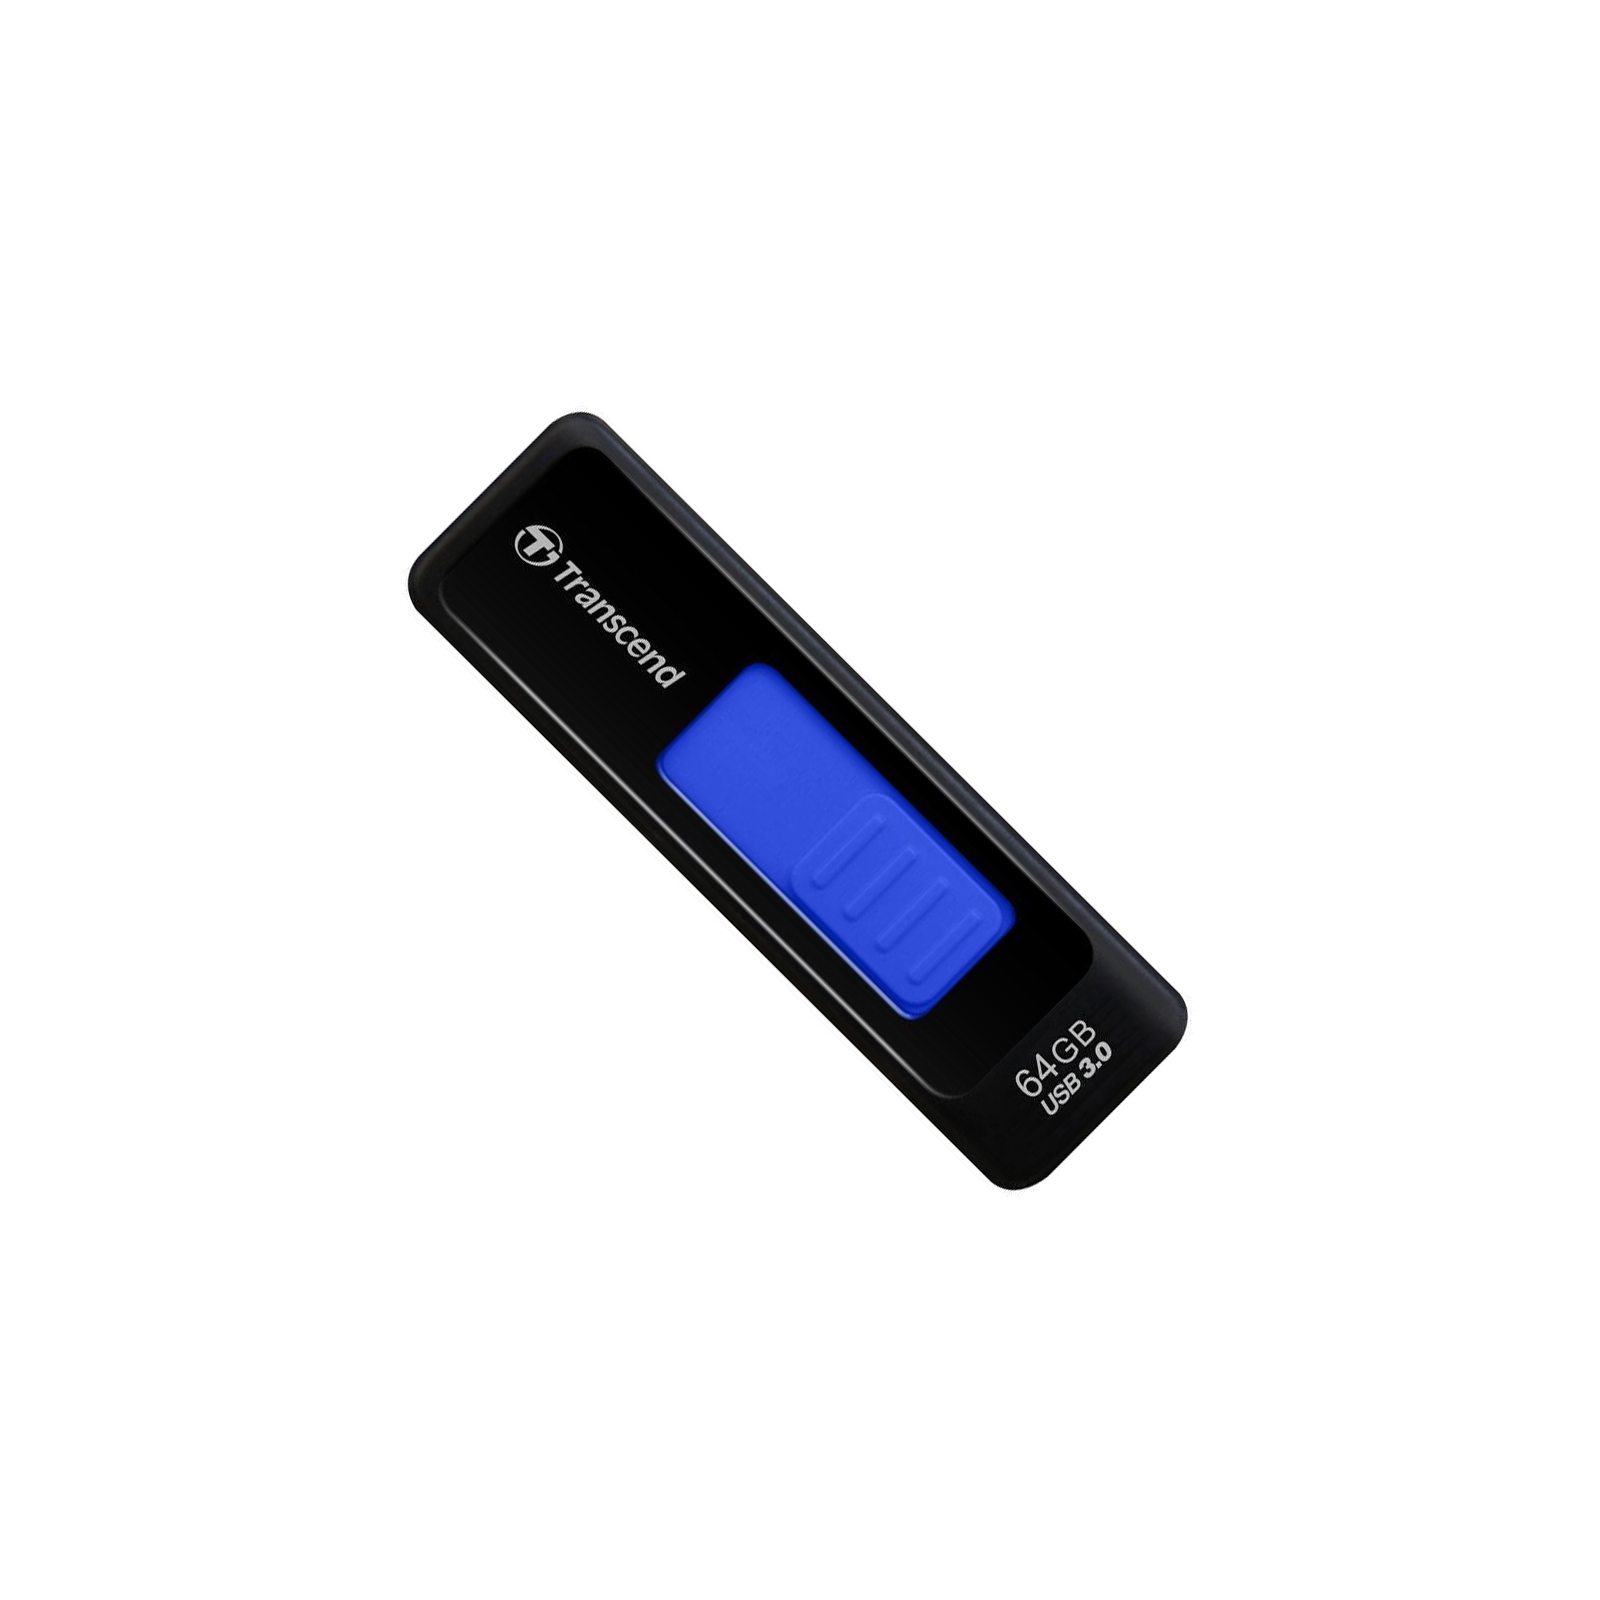 USB флеш накопитель Transcend 4Gb JetFlash 760 (TS4GJF760)